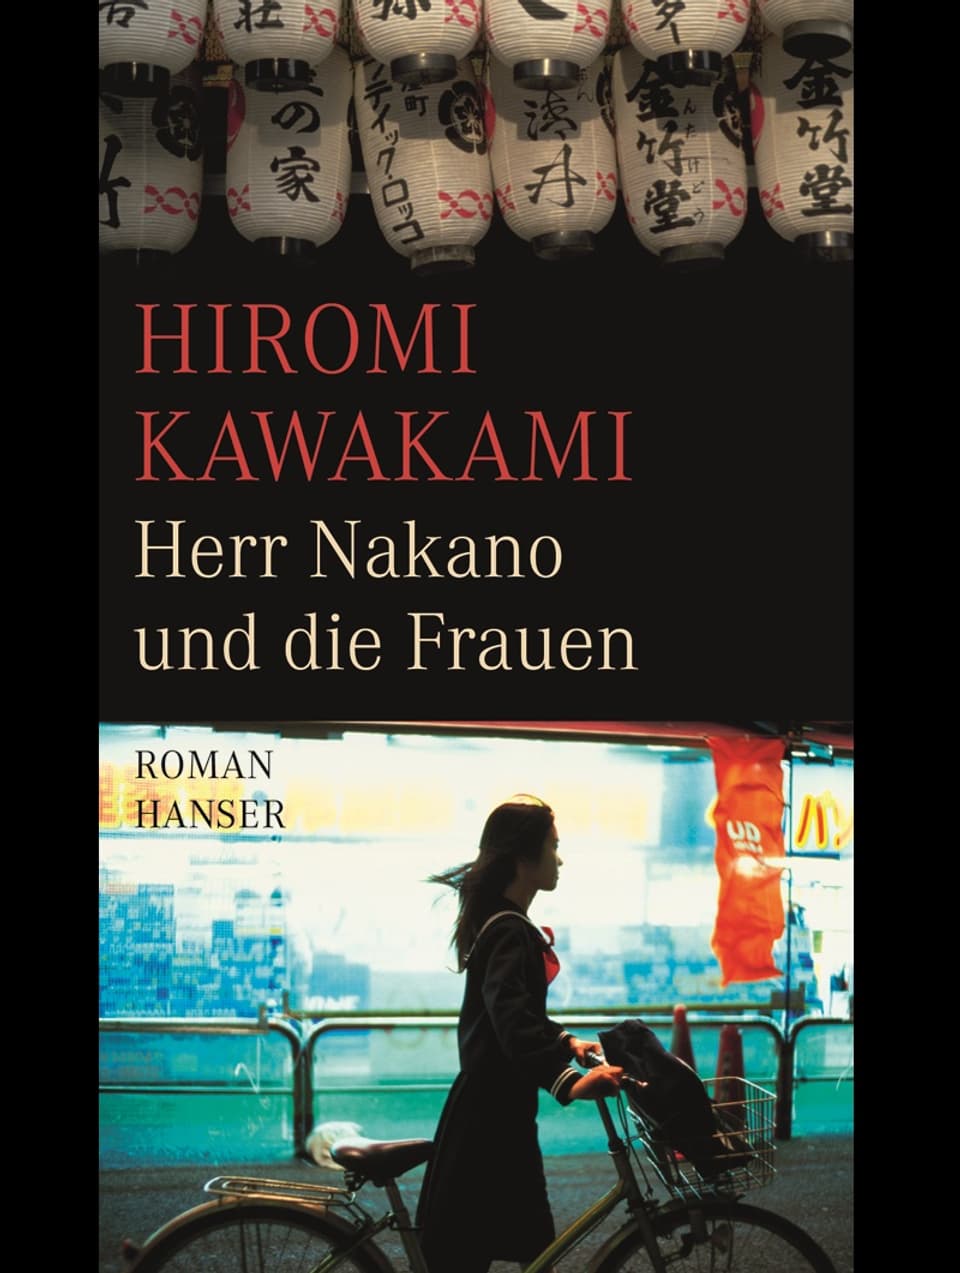 Buchcover von "Herr Nakano und die Frauen"